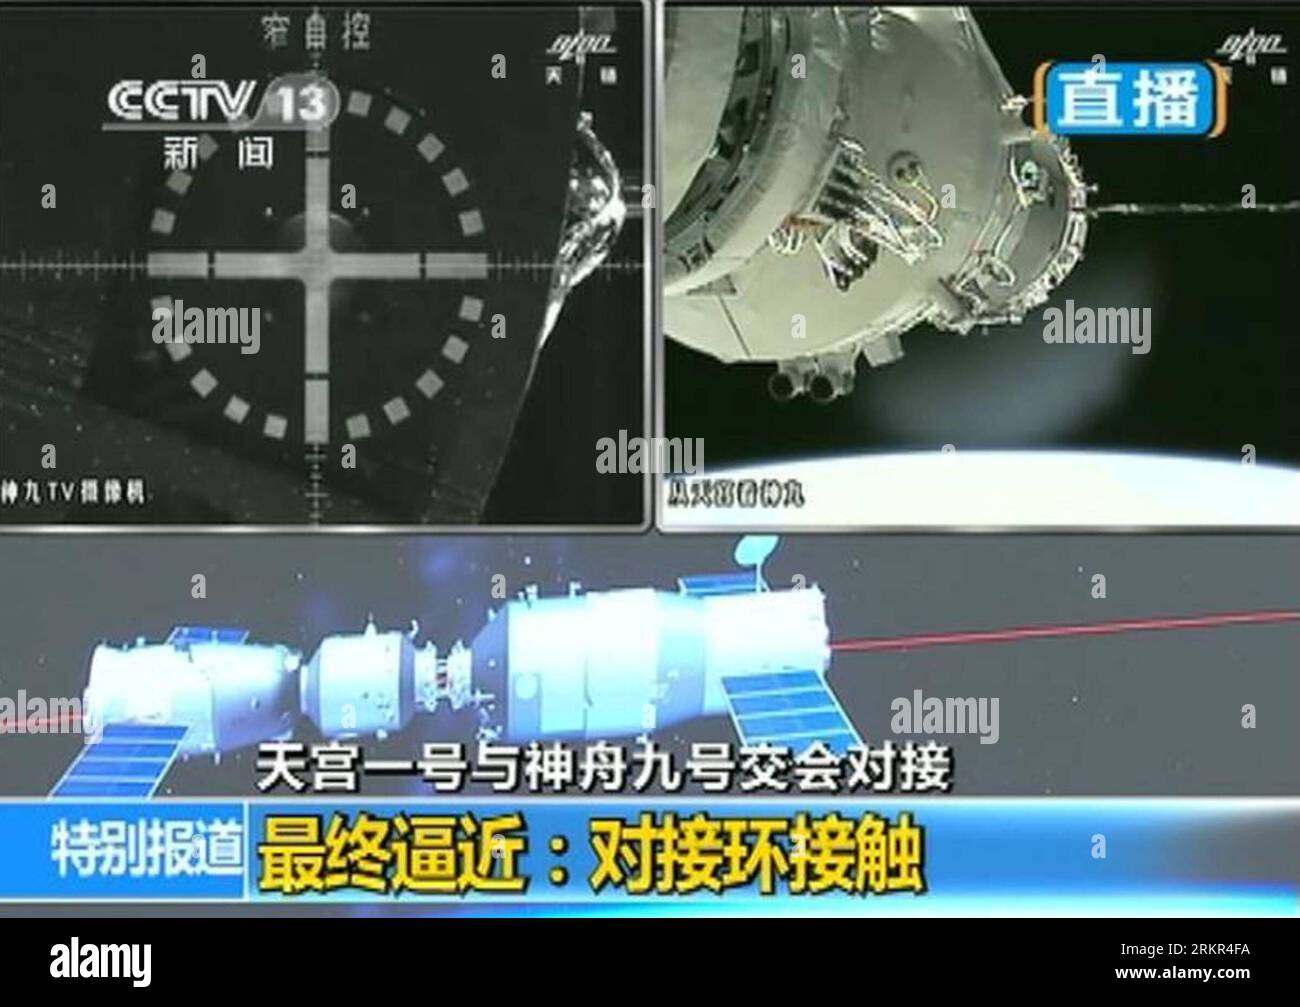 Bildnummer : 58115823 Datum : 18.06.2012 Copyright : imago/Xinhua (120618) -- JIUQUAN, 18 juin 2012 (Xinhua) -- une capture TV prise le 18 juin 2012 montre un vaisseau spatial habité Shenzhou-9 effectuant un amarrage automatique avec le module de laboratoire Tiangong-1 en orbite. (Xinhua) (ry) (SHENZHOU-9-TIANGONG-1) CHINA-SHENZHOU-9-TIANGONG-1-DOCKING (CN) PUBLICATIONxNOTxINxCHN Politik Raumfahrt IX Andockmanöver Capture d'écran xjh x0x 2012 quer premiumd 58115823 Date 18 06 2012 Copyright Imago XINHUA Jiuquan juin 18 2012 la tombe de XINHUA TV prise LE 18 2012 juin montre SHENZHOU 9 vaisseau spatial habité conduisant à DO automatique Banque D'Images